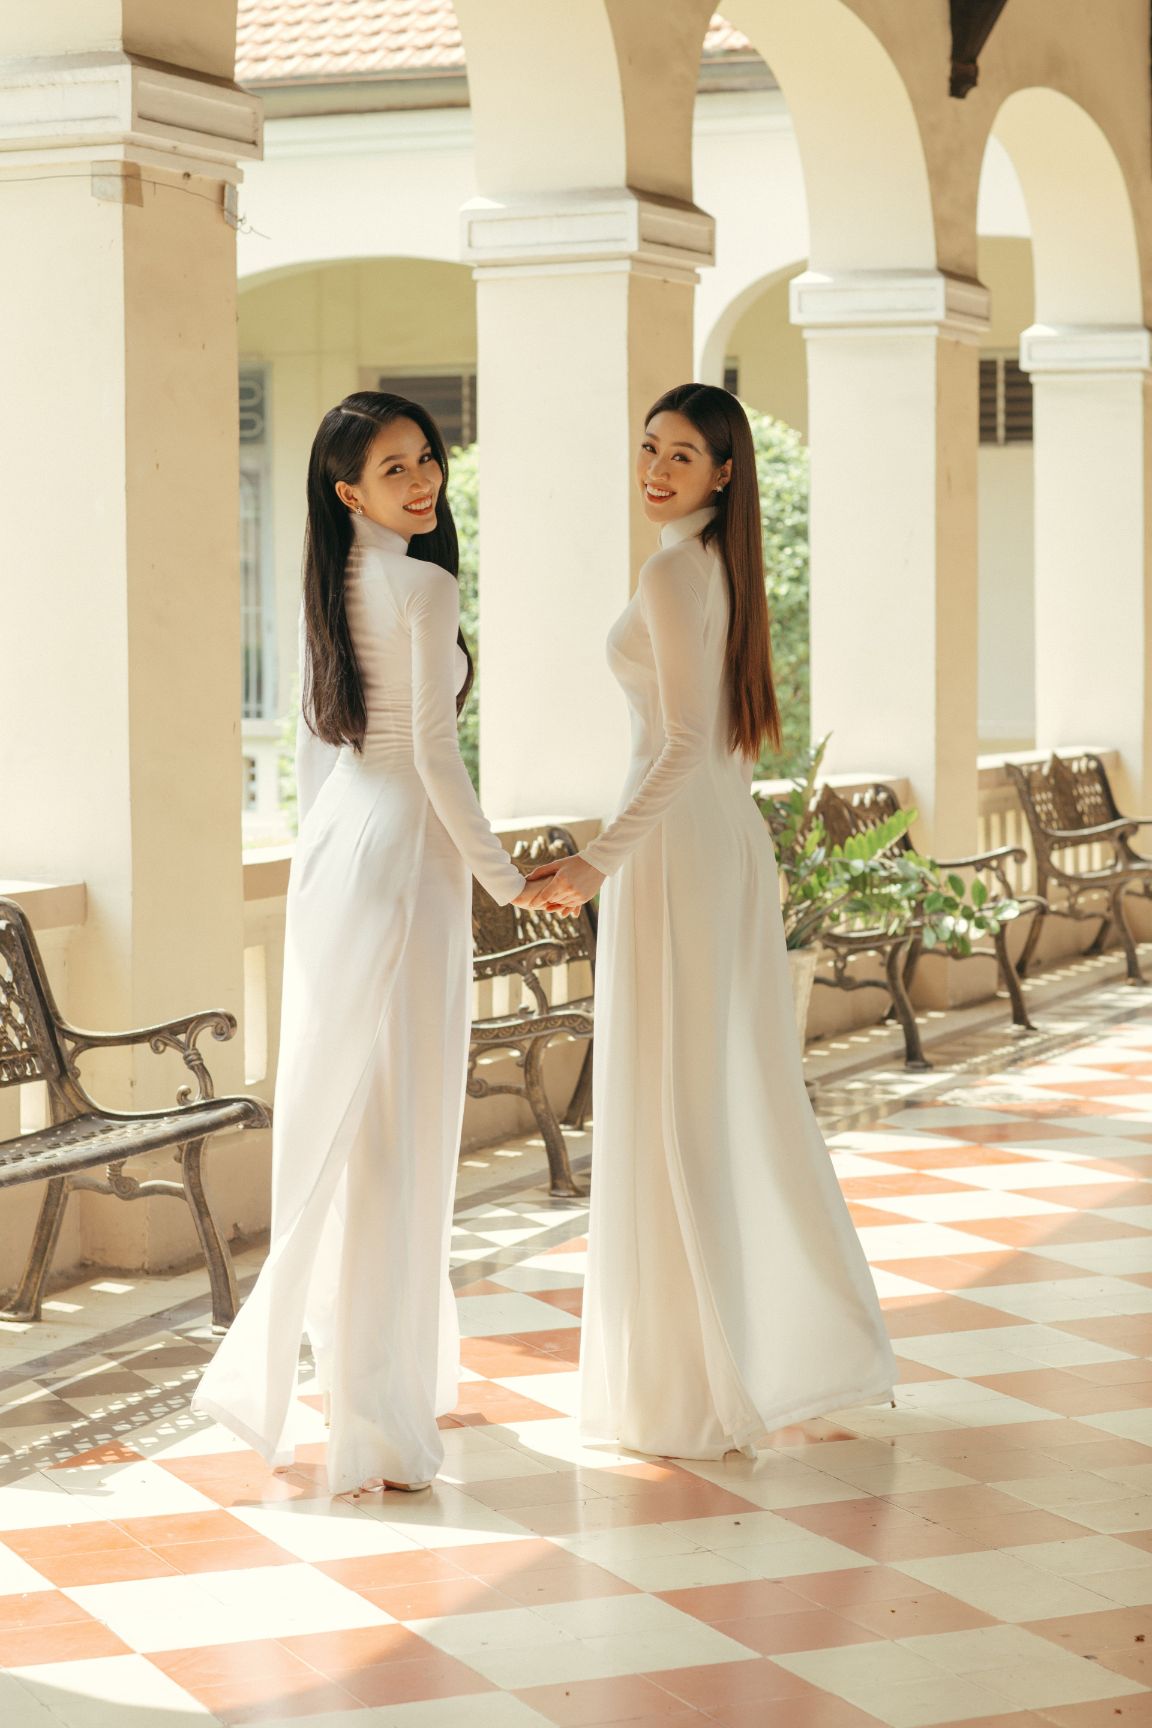 Hoa hau Khanh Van va A hau Phuong Anh 021 Hoa hậu Khánh Vân và Á hậu Phương Anh thướt tha áo dài chào mừng năm học mới